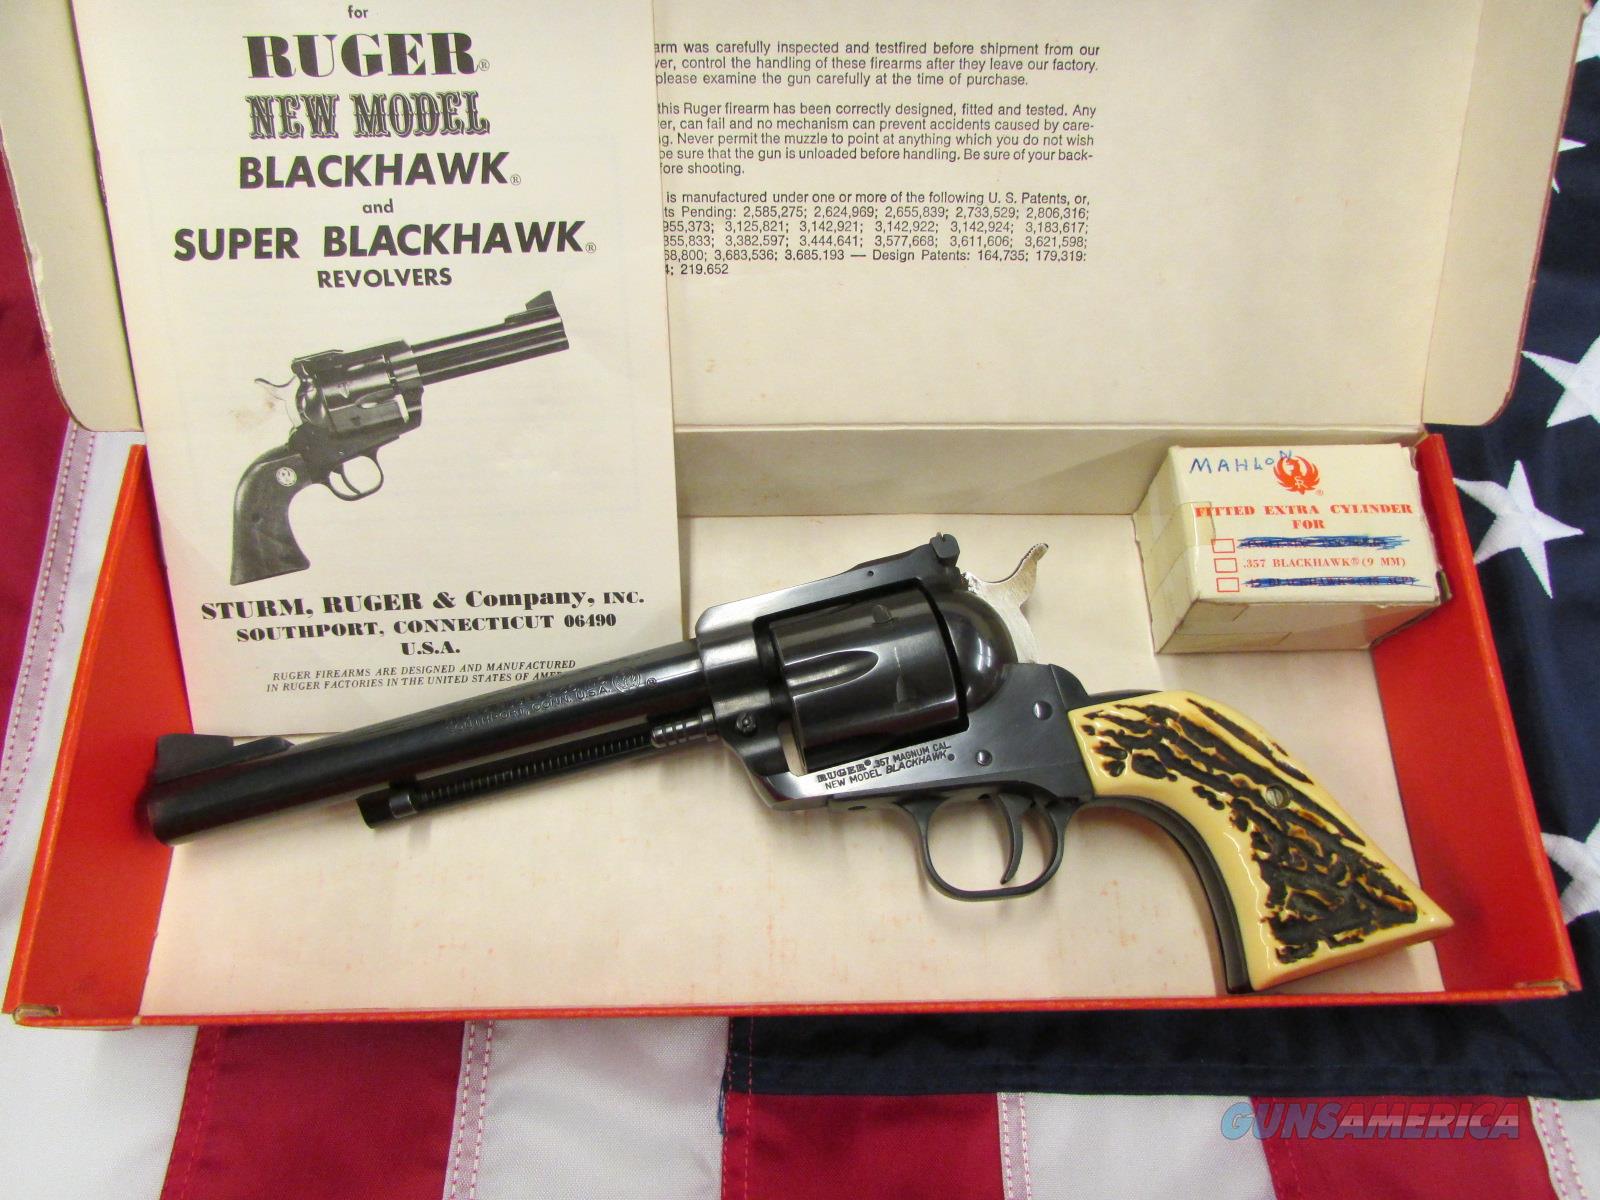 1976 Bicentennial Ruger Blackhawk Convertible 357 Mag9mm Stag Grips - new model ruger blackhawk 357 grips